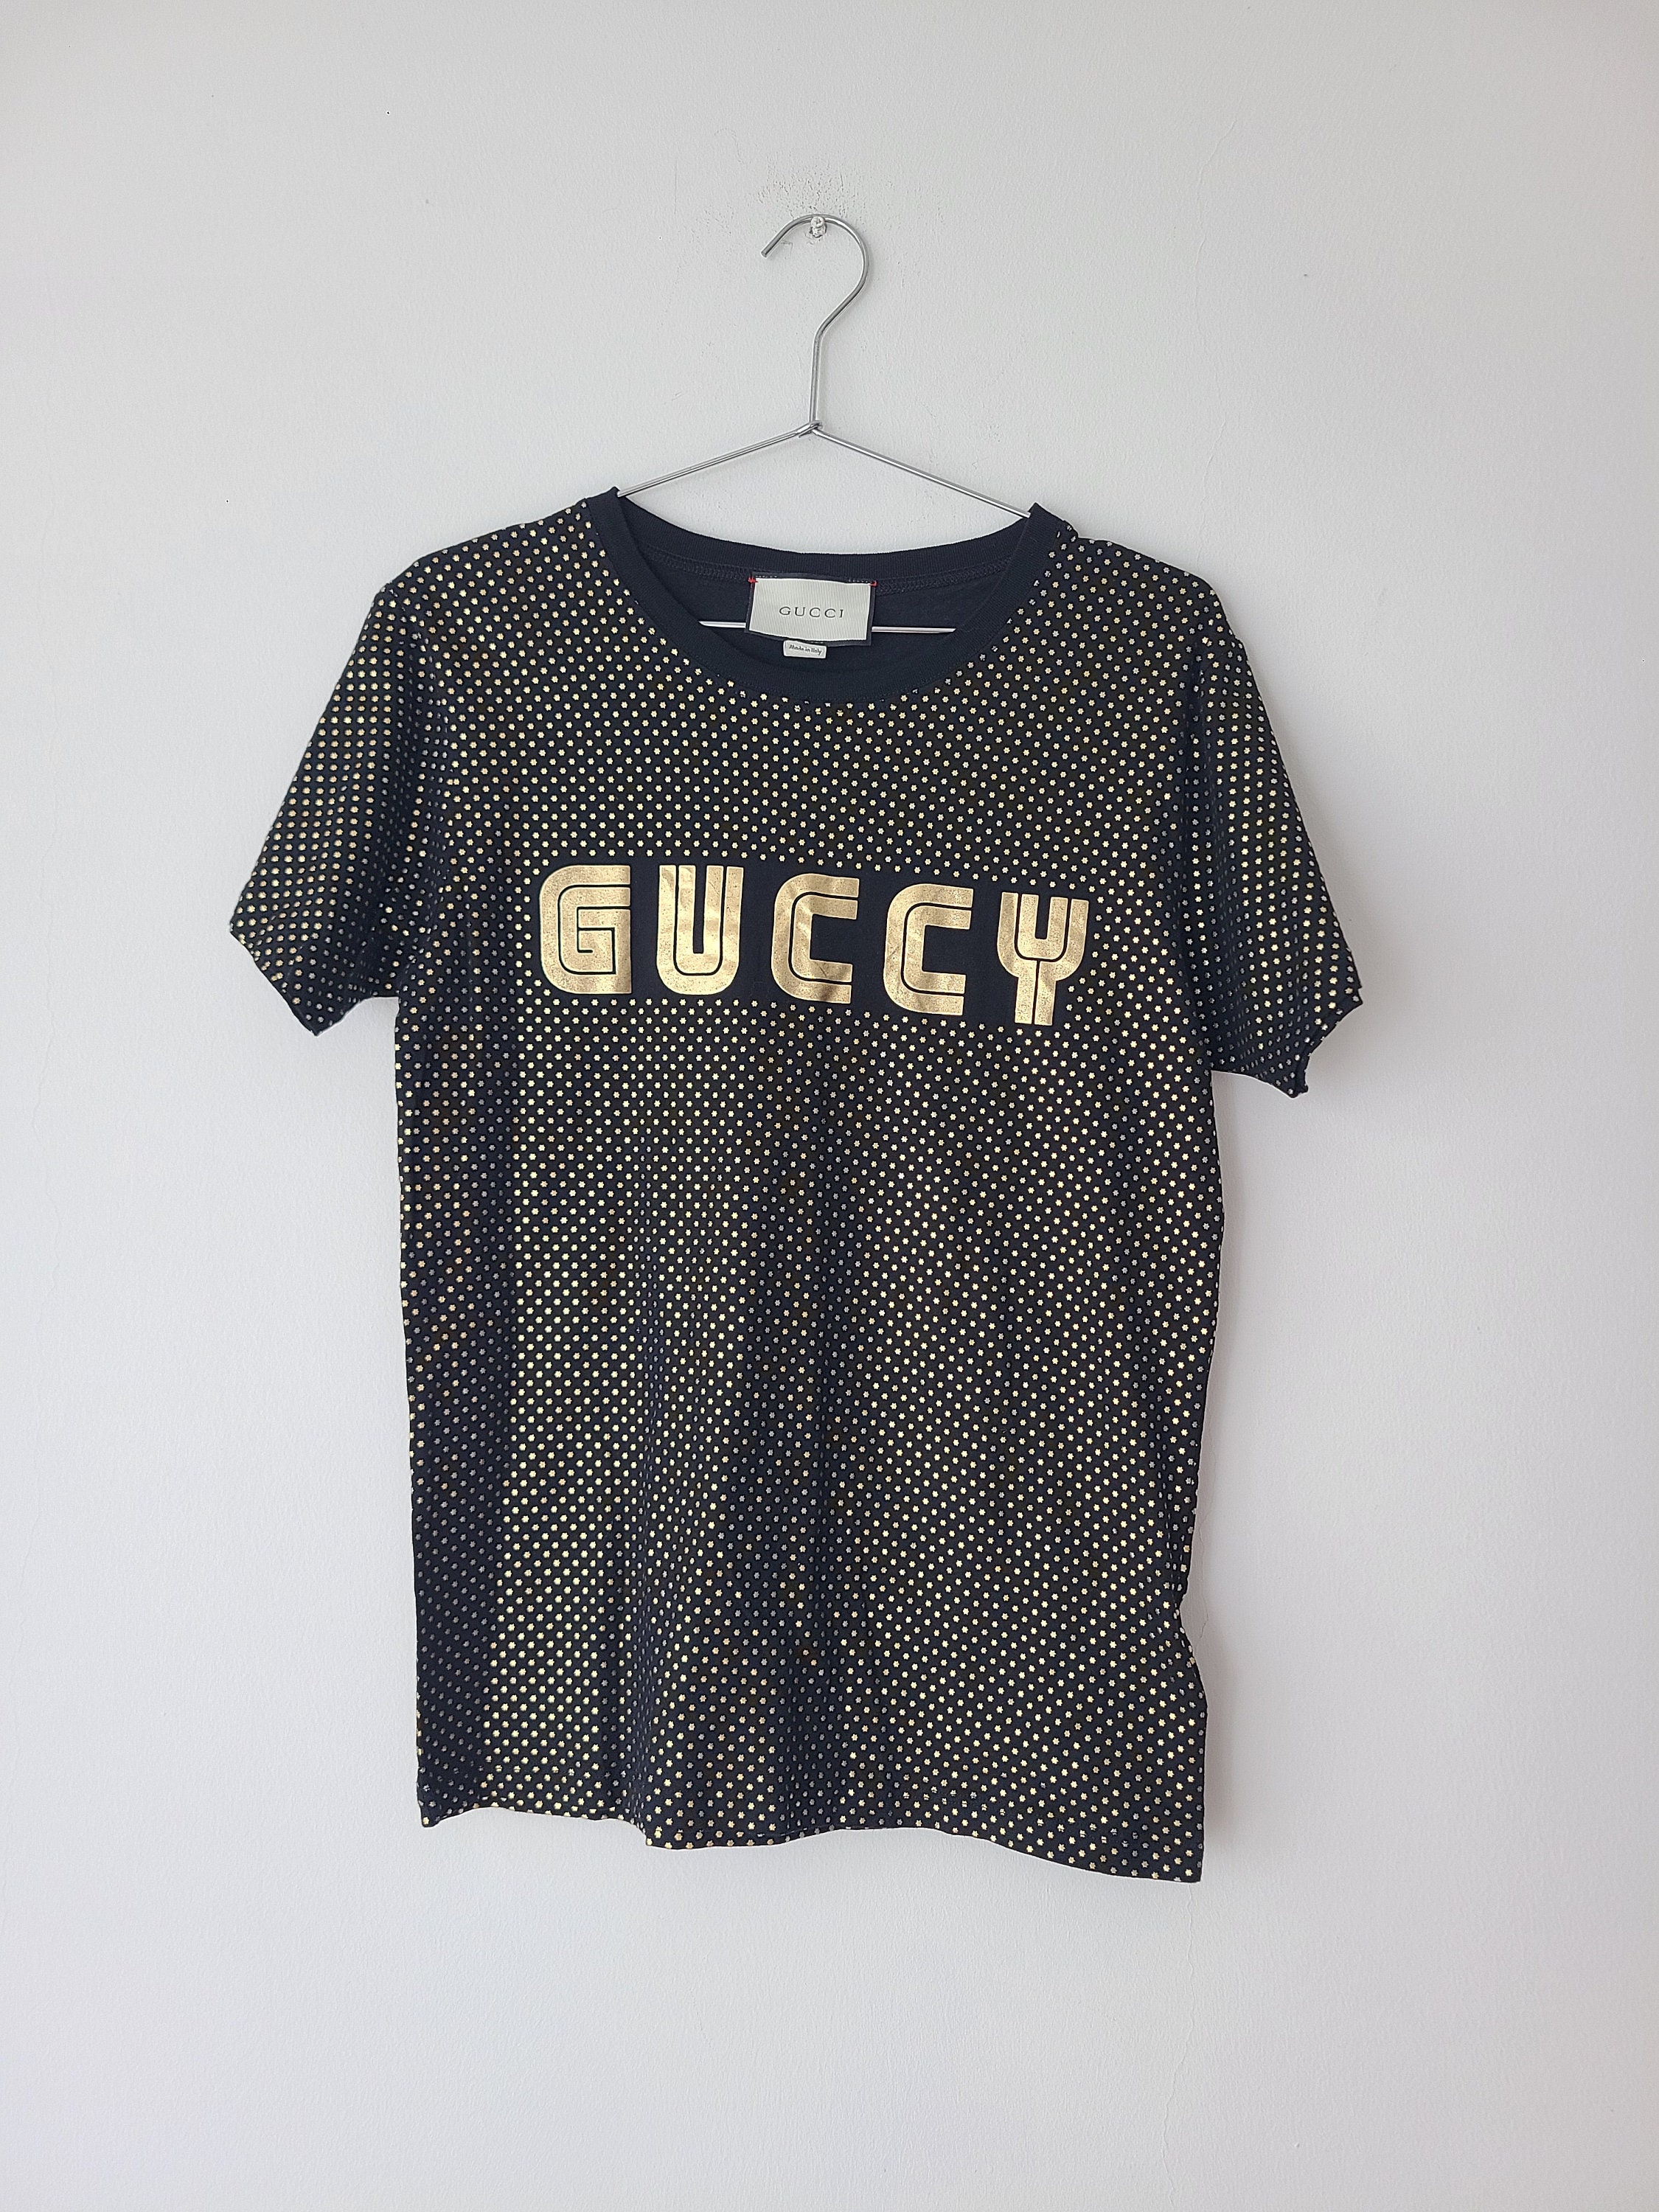 Gucci Dior Chanel Louis Vuitton Graphic T-Shirt - Mint Leafe Boutique Black / XL